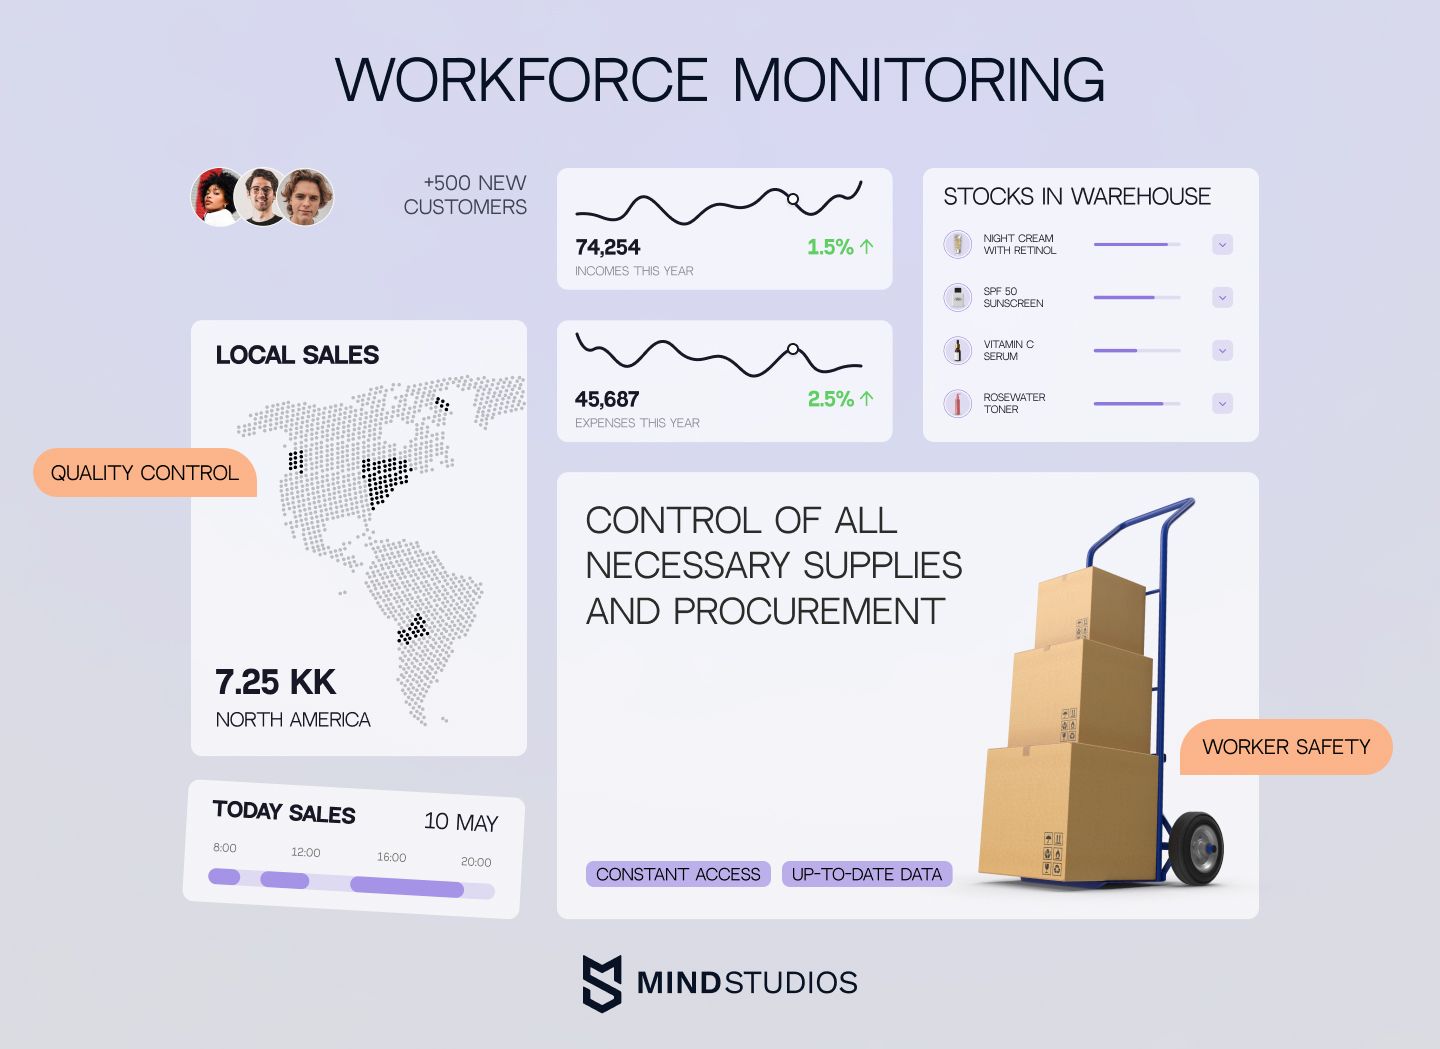 Workforce monitoring